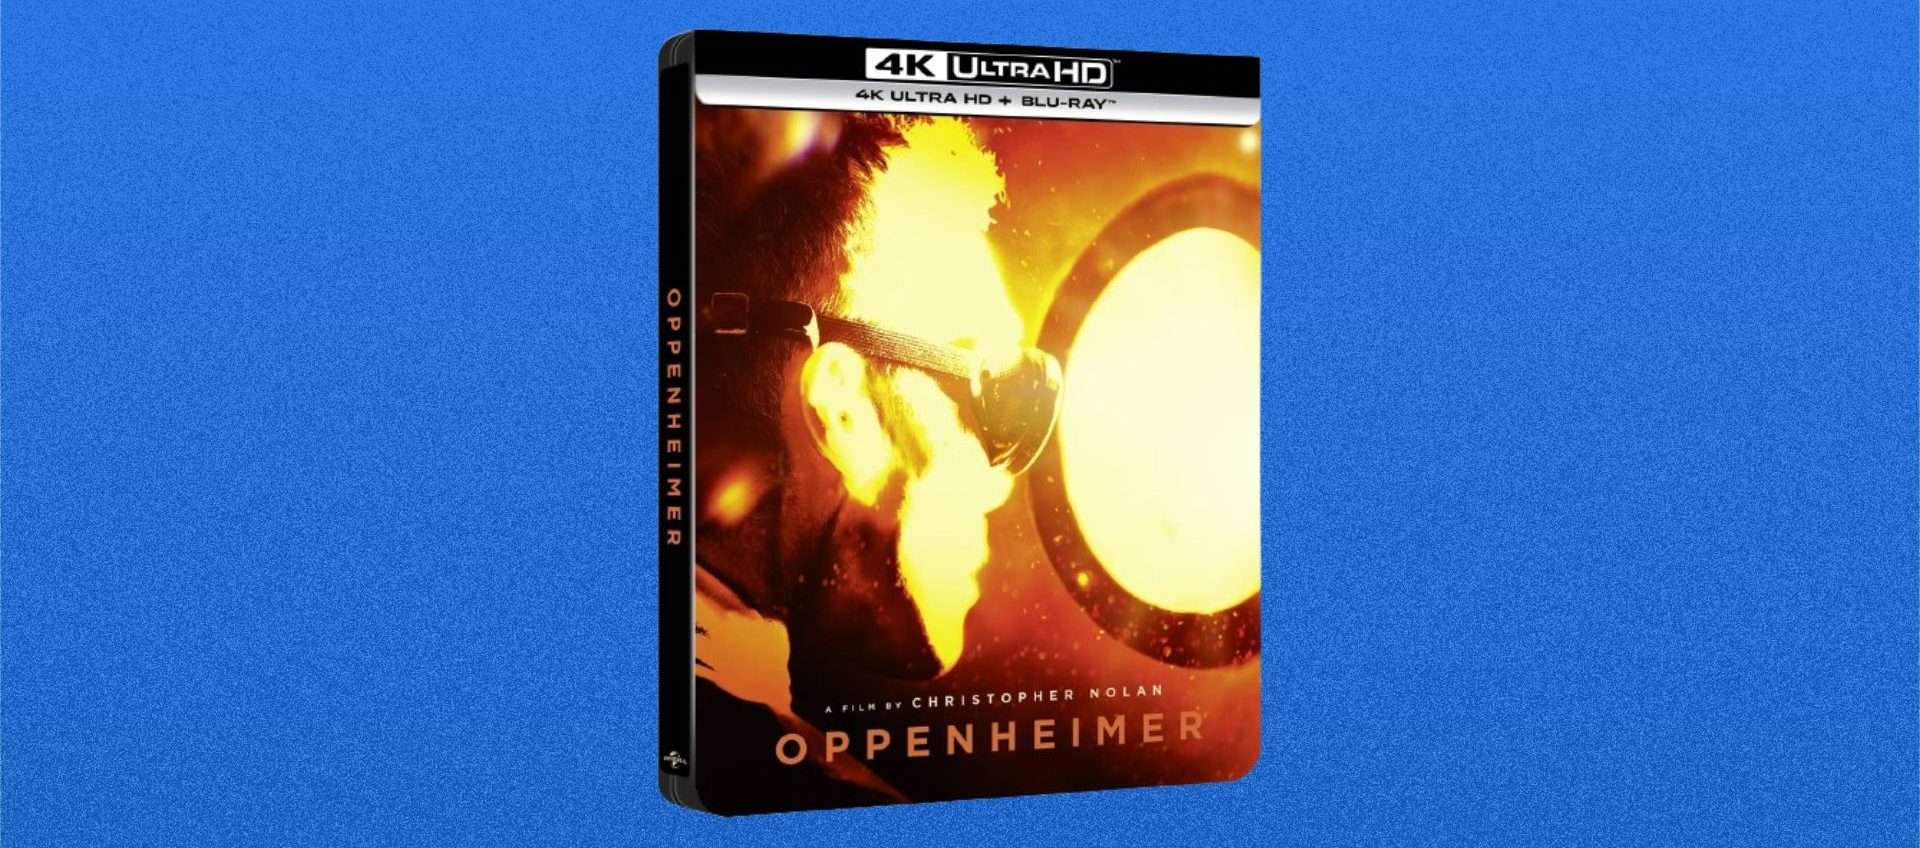 Oppenheimer, offerta flash sulla steelbook 4K UDH: c'è poco tempo